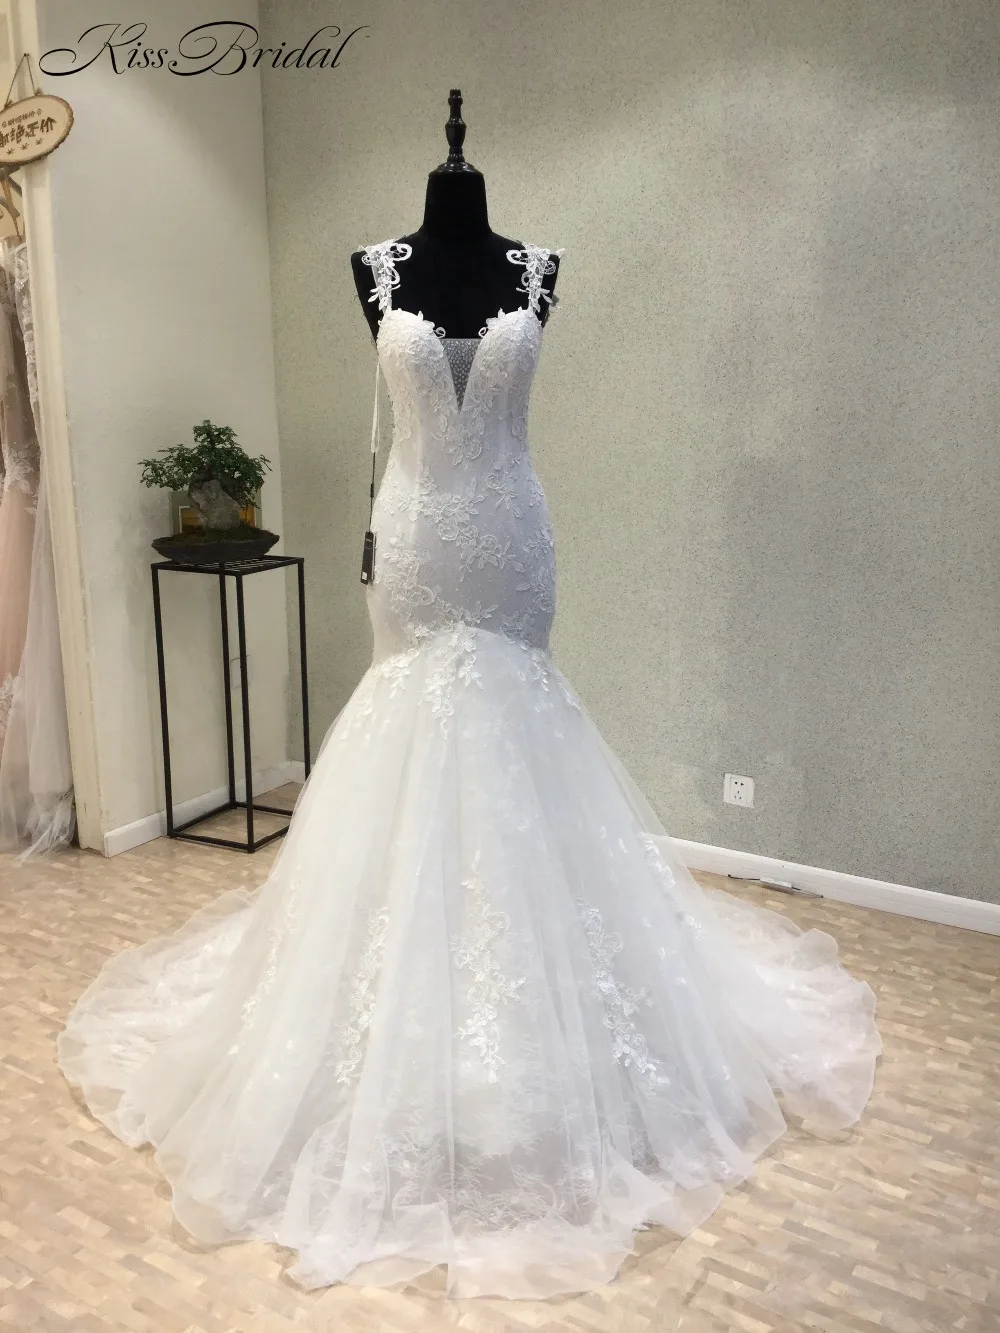 

Vestido de noiva новые модные белые свадебные платья Стиль русалки прозрачные пуговицы сзади Тюль аппликация свадебные платья